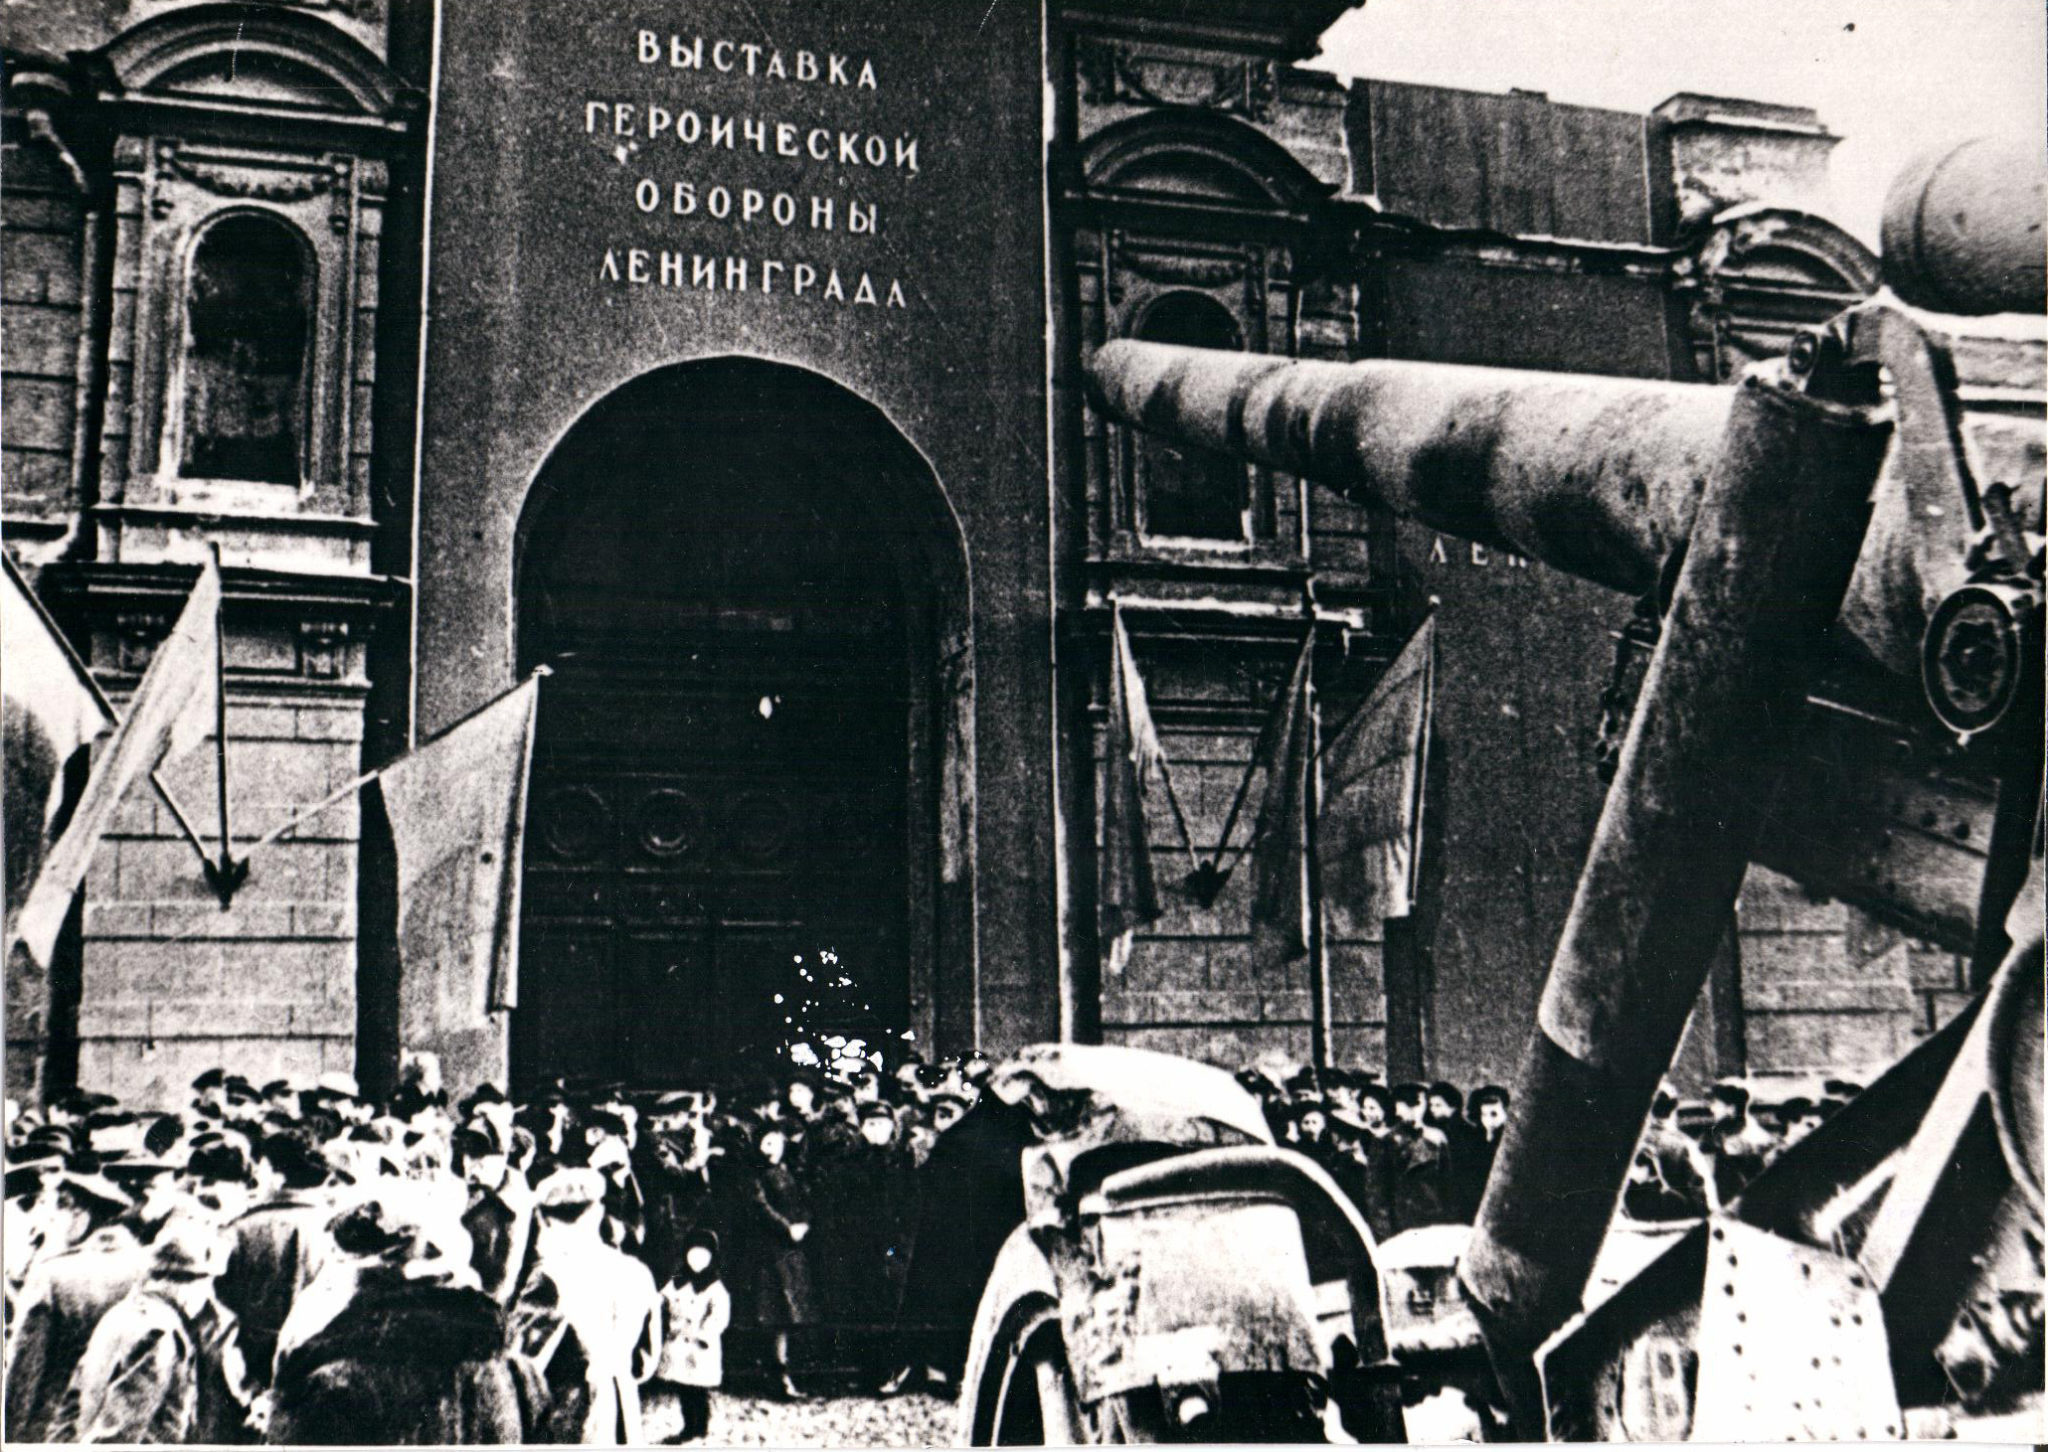 Музей обороны и блокады Ленинграда приглашает на выставку о своей первой экспозиции, открывшейся в 1944 году